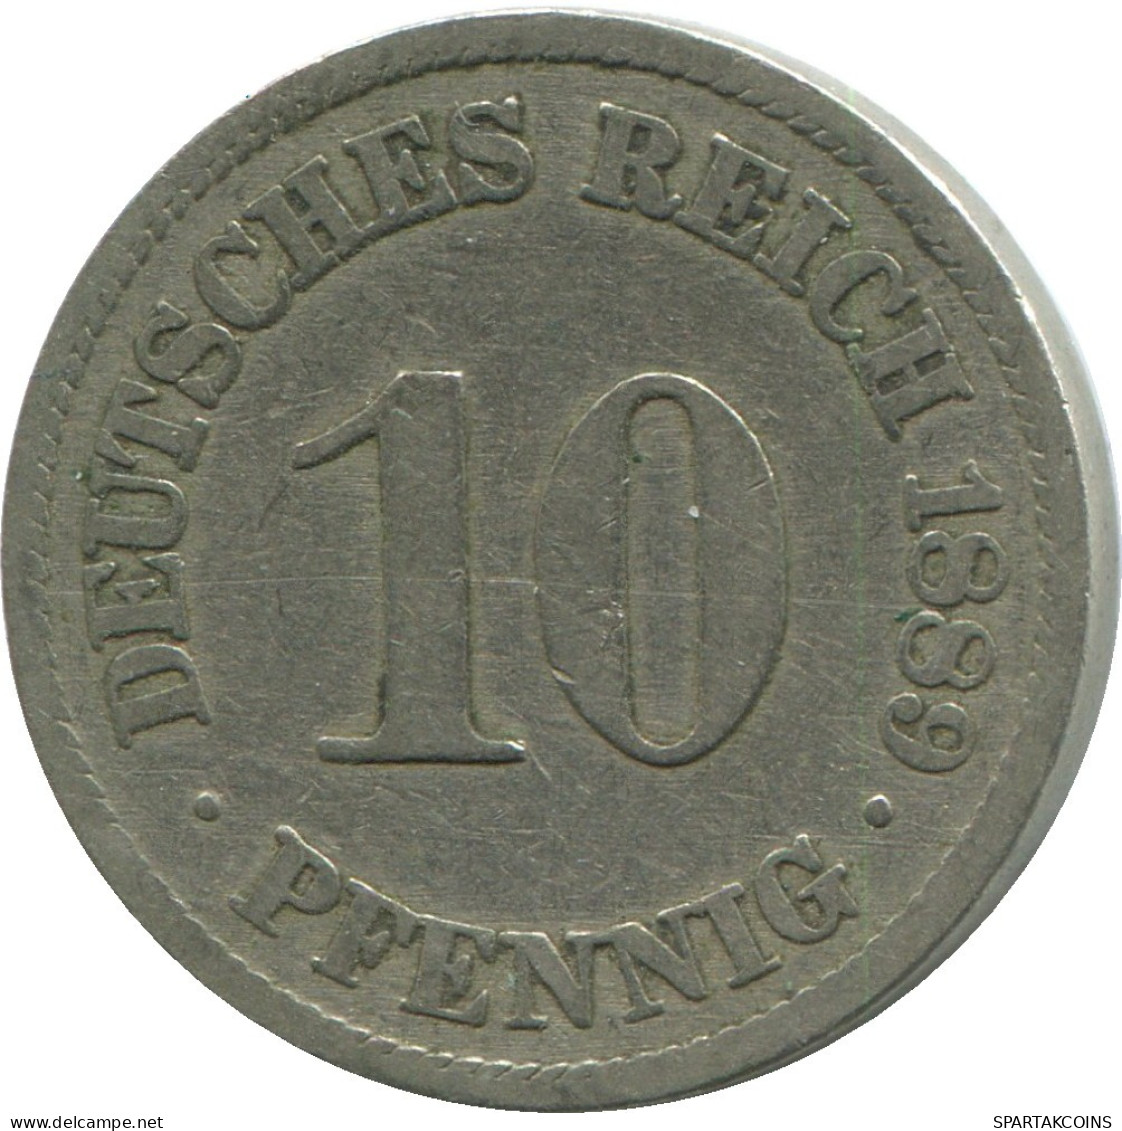 10 PFENNIG 1889 A GERMANY Coin #DE10452.5.U.A - 10 Pfennig